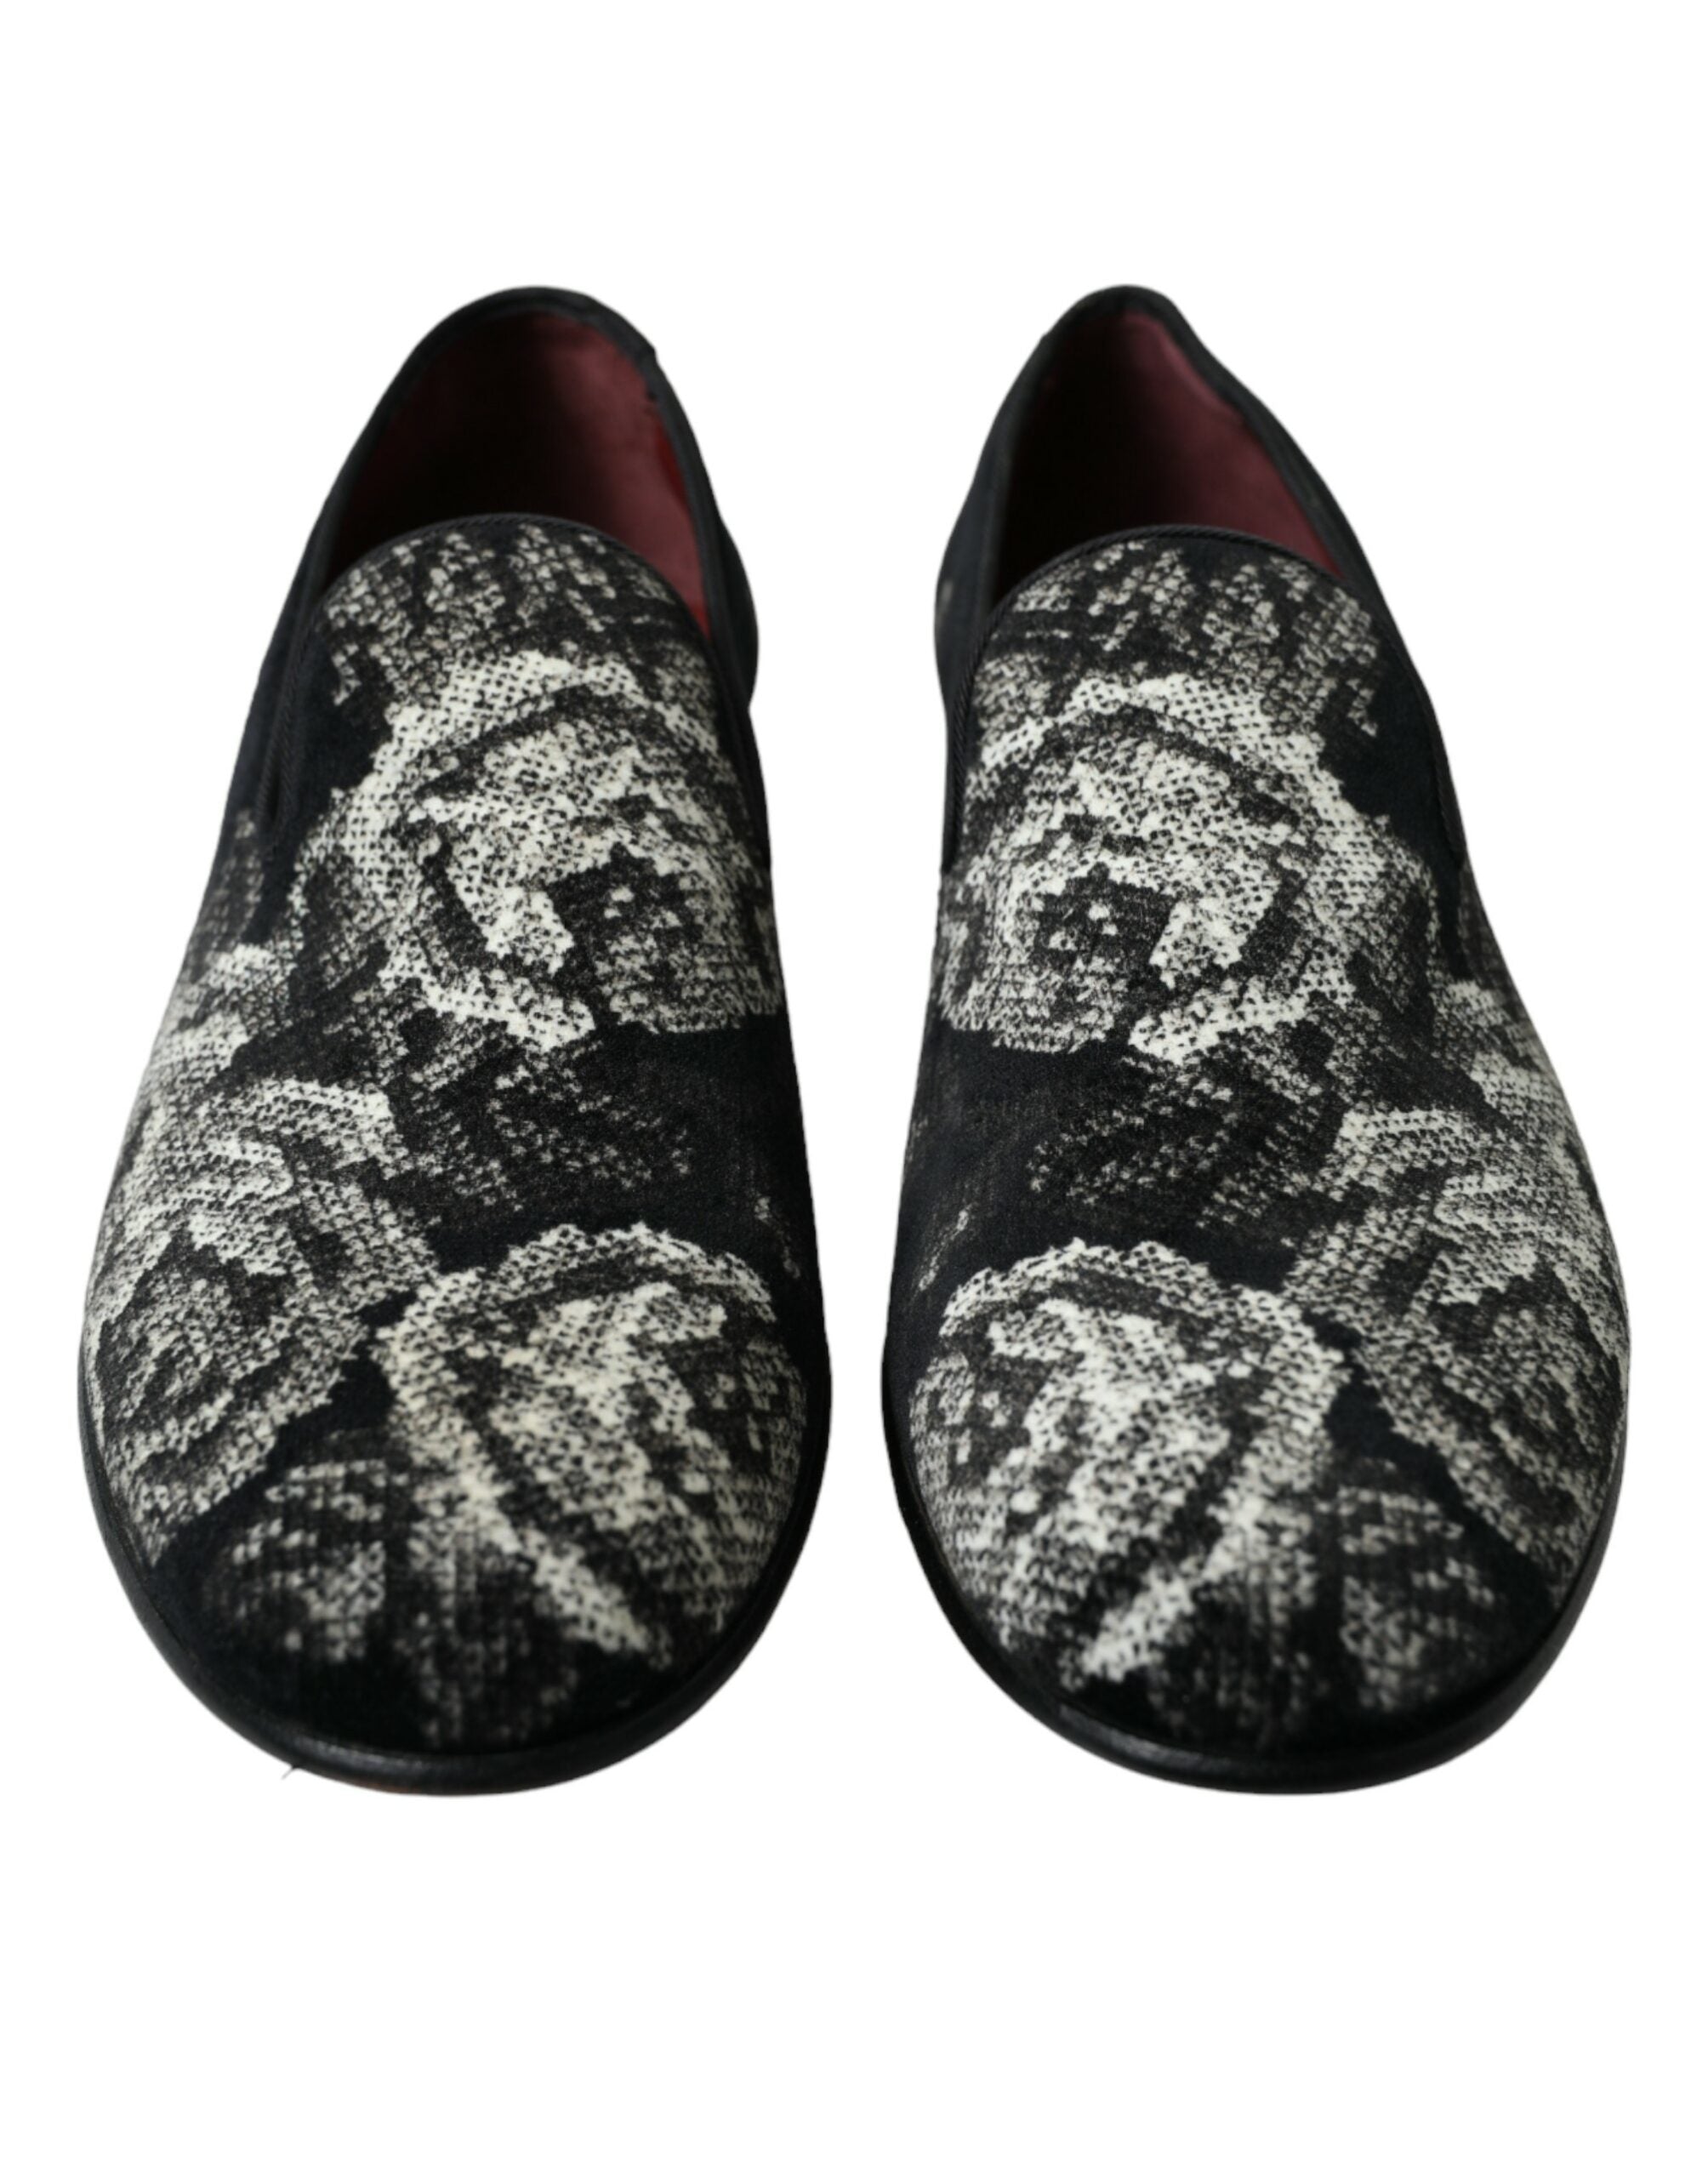 Dolce & Gabbana Pantuflas con estampado floral negro Hombre Mocasines Zapatos de vestir